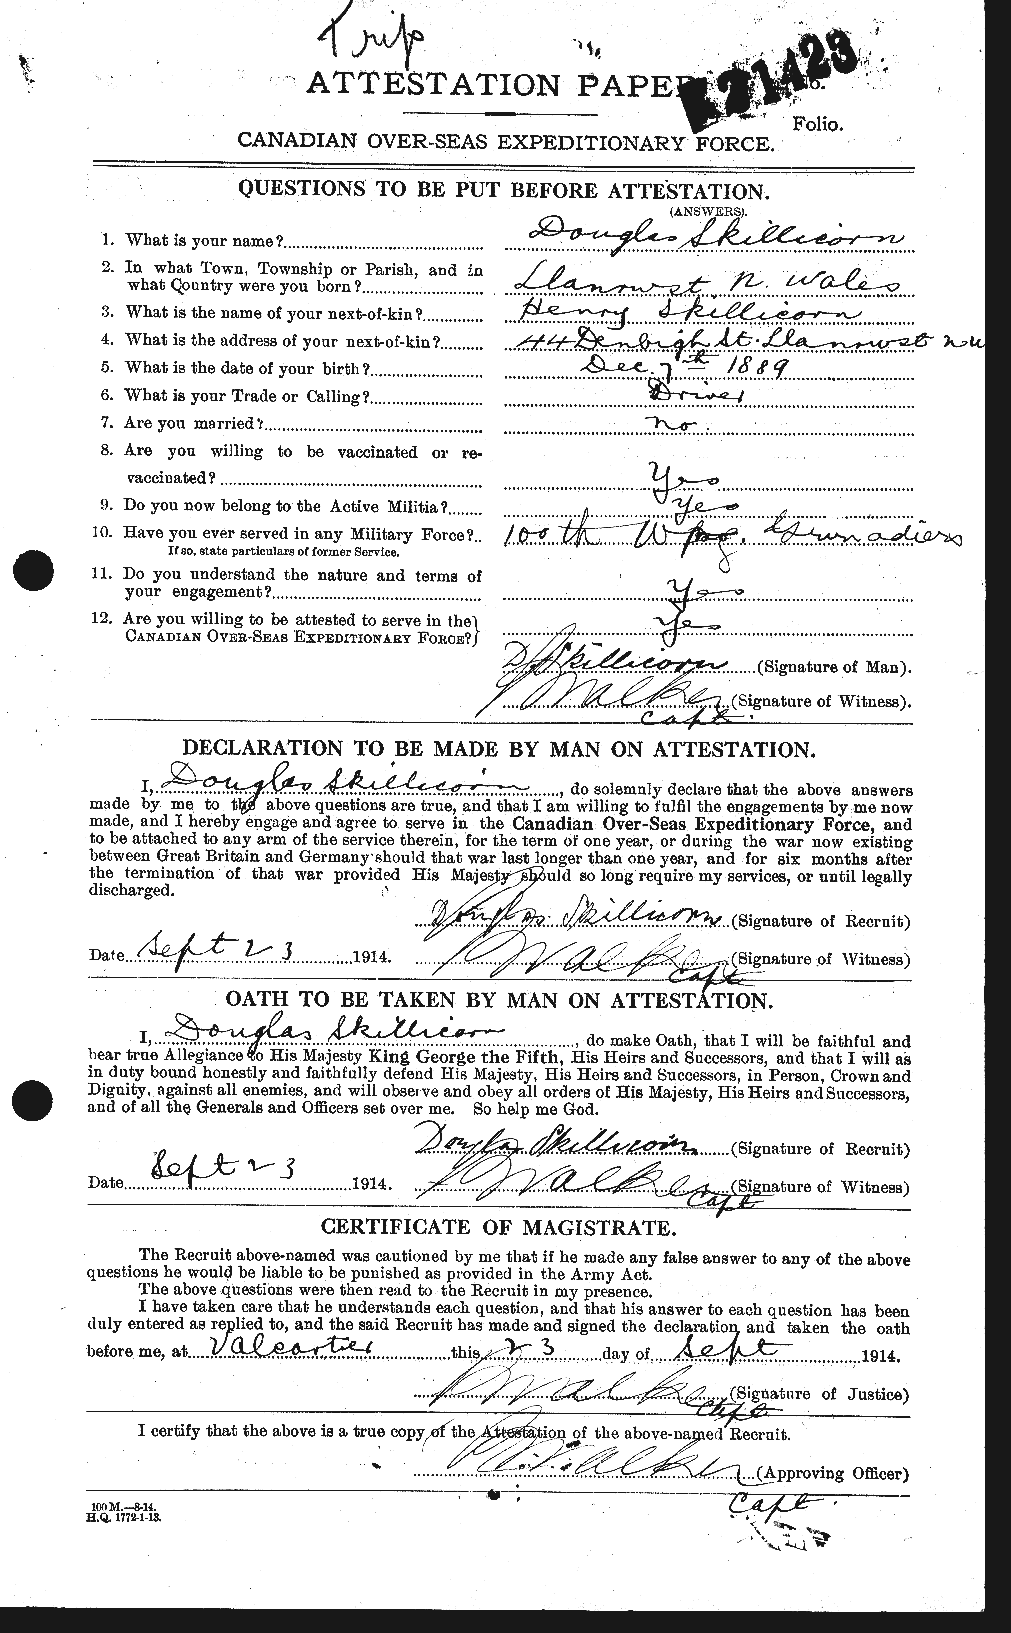 Dossiers du Personnel de la Première Guerre mondiale - CEC 098996a